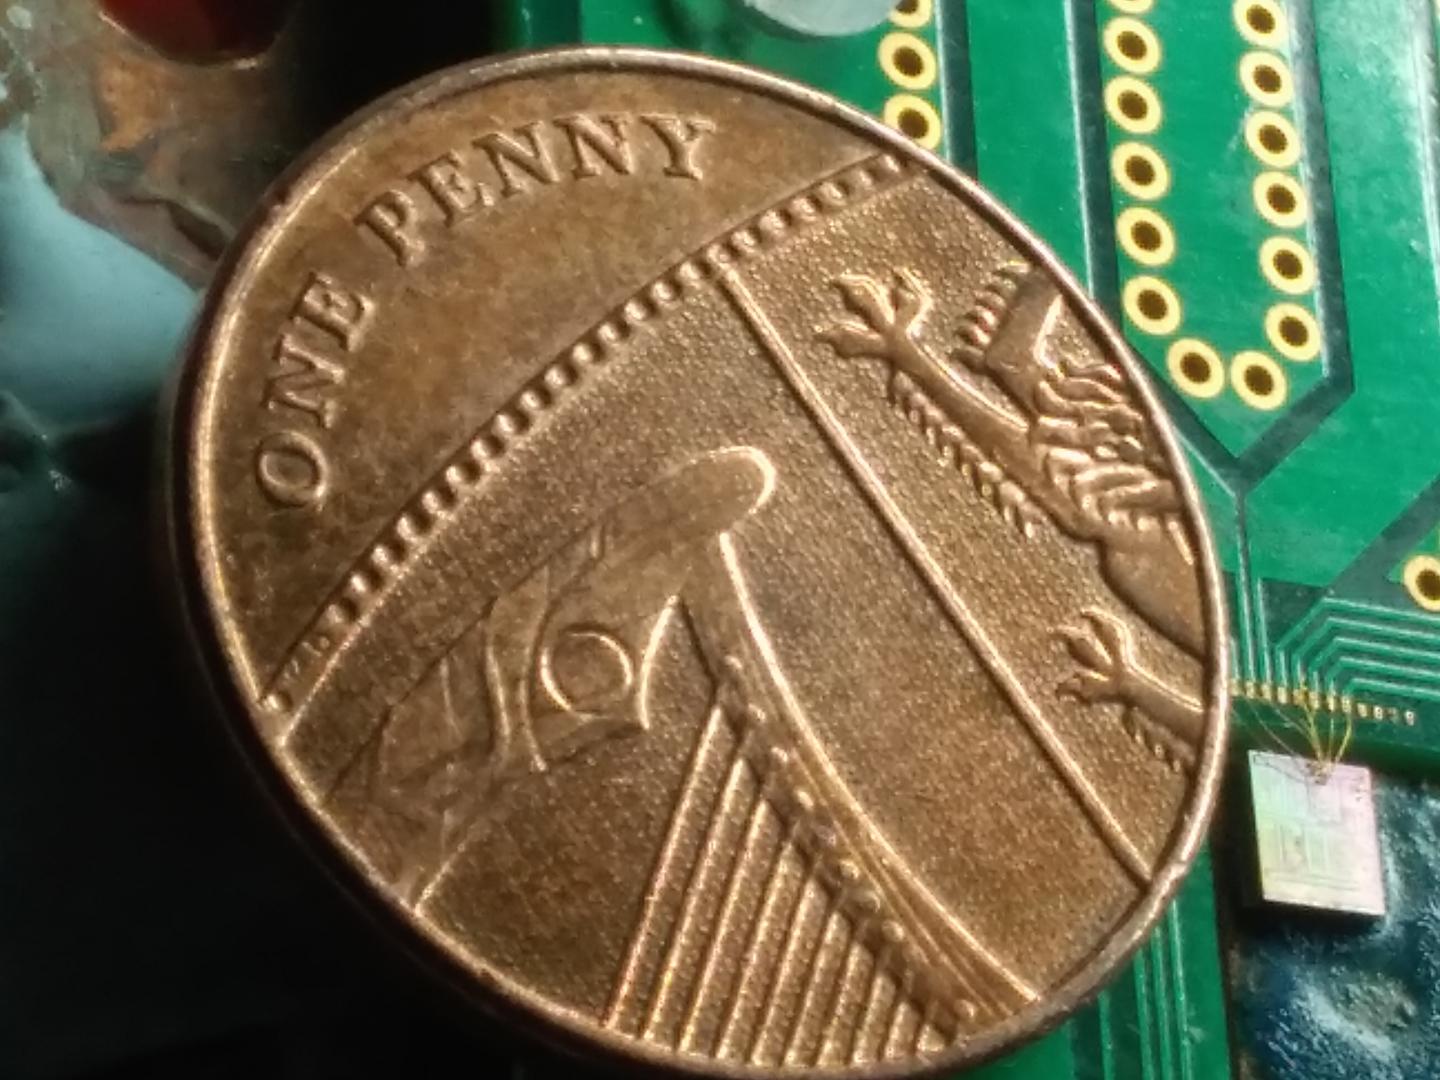 Quantum Random Number Generator Chip